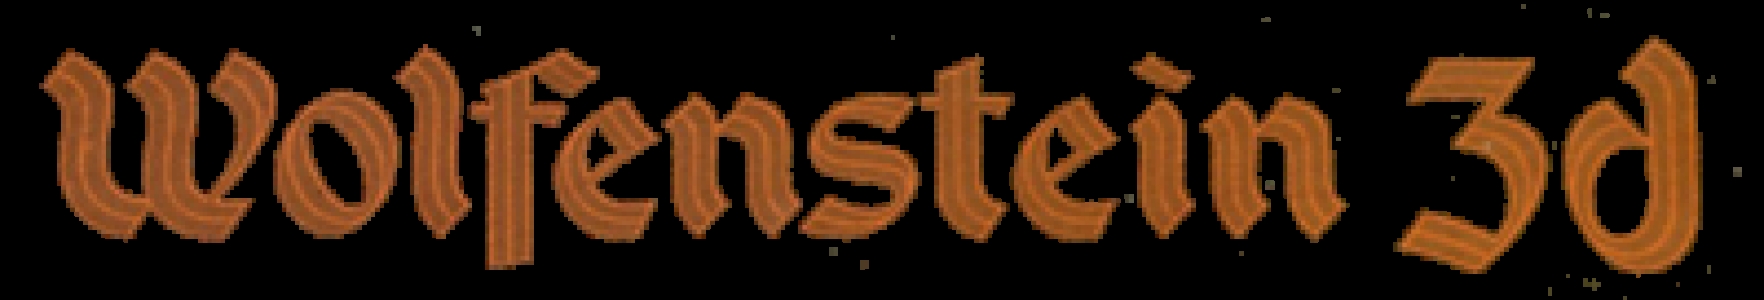 Wolfenstein 3-D clearlogo